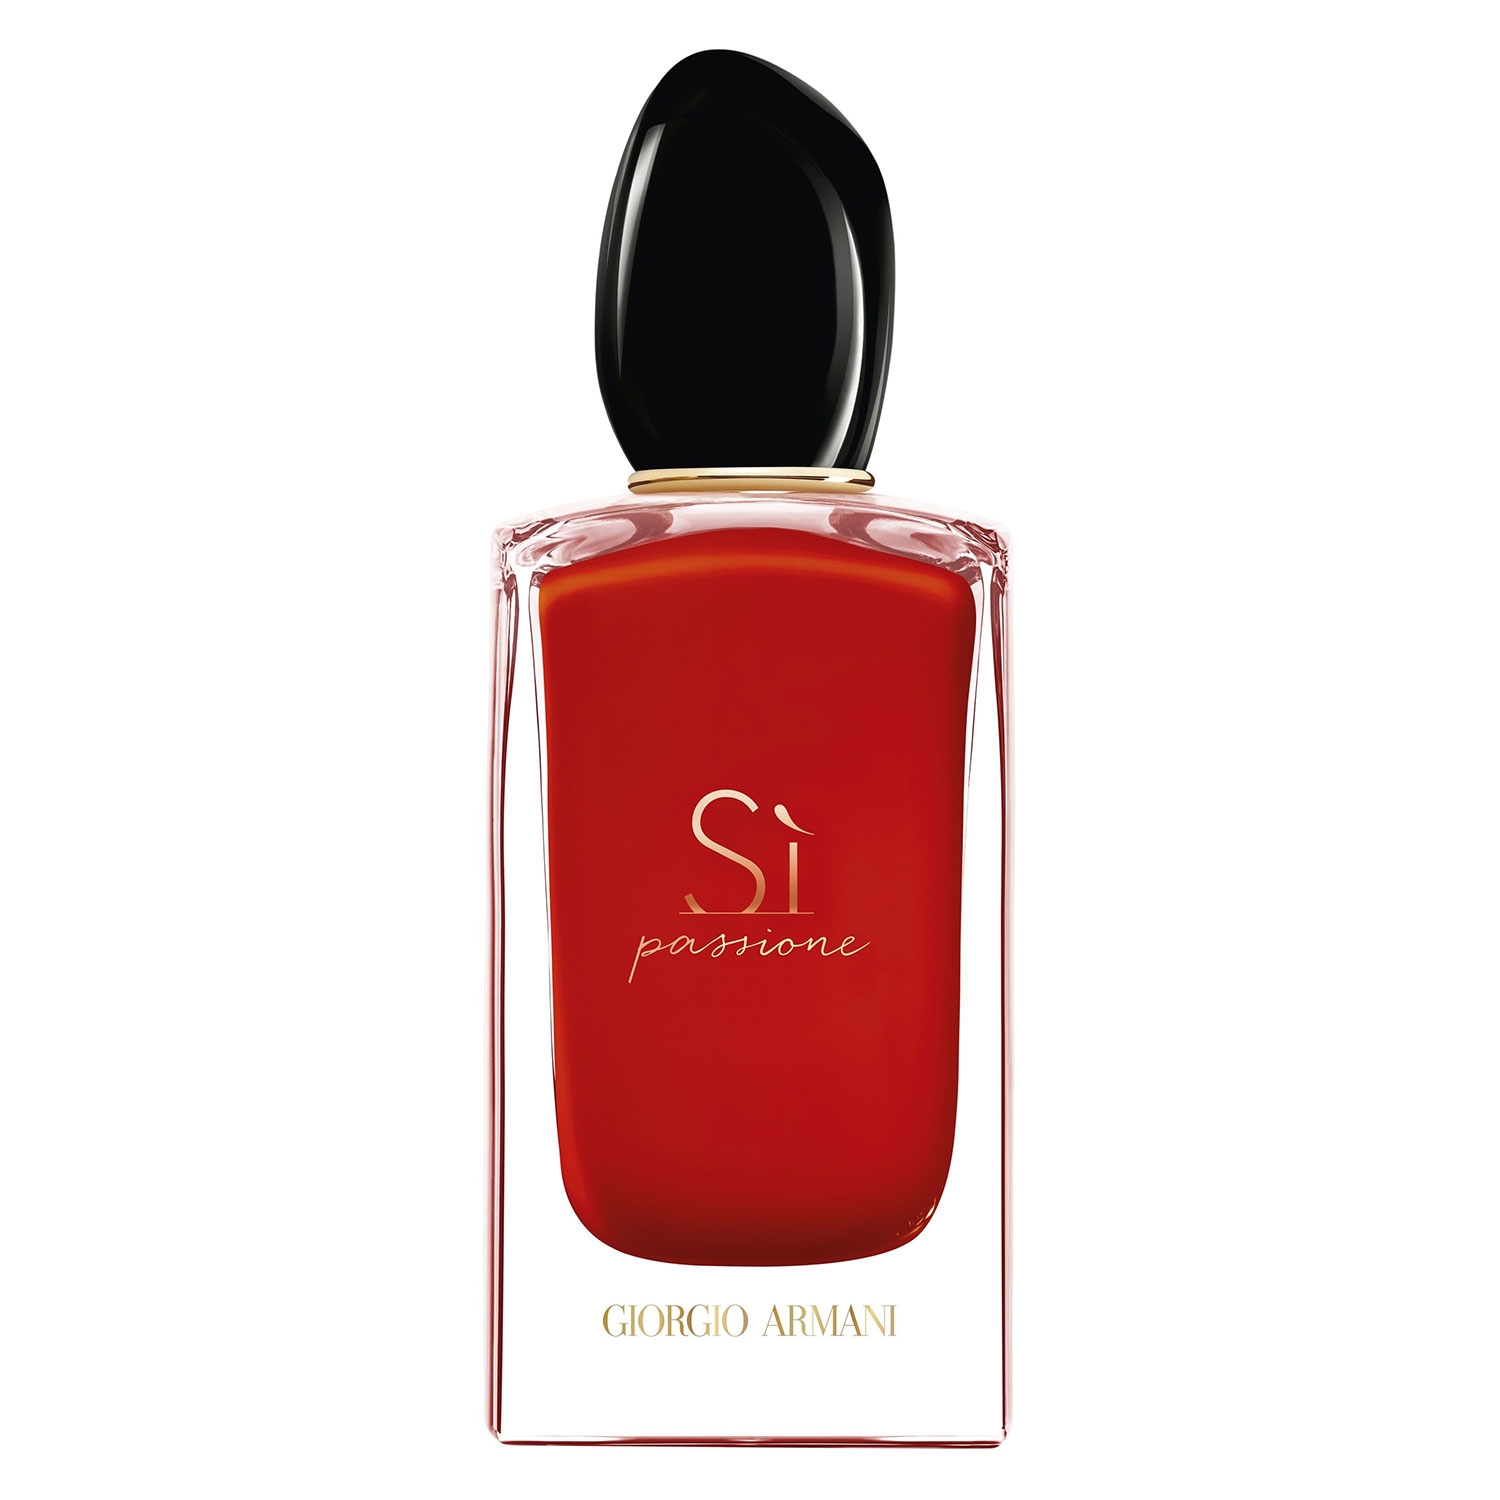 Product image from Sì - Passione Eau de Parfum